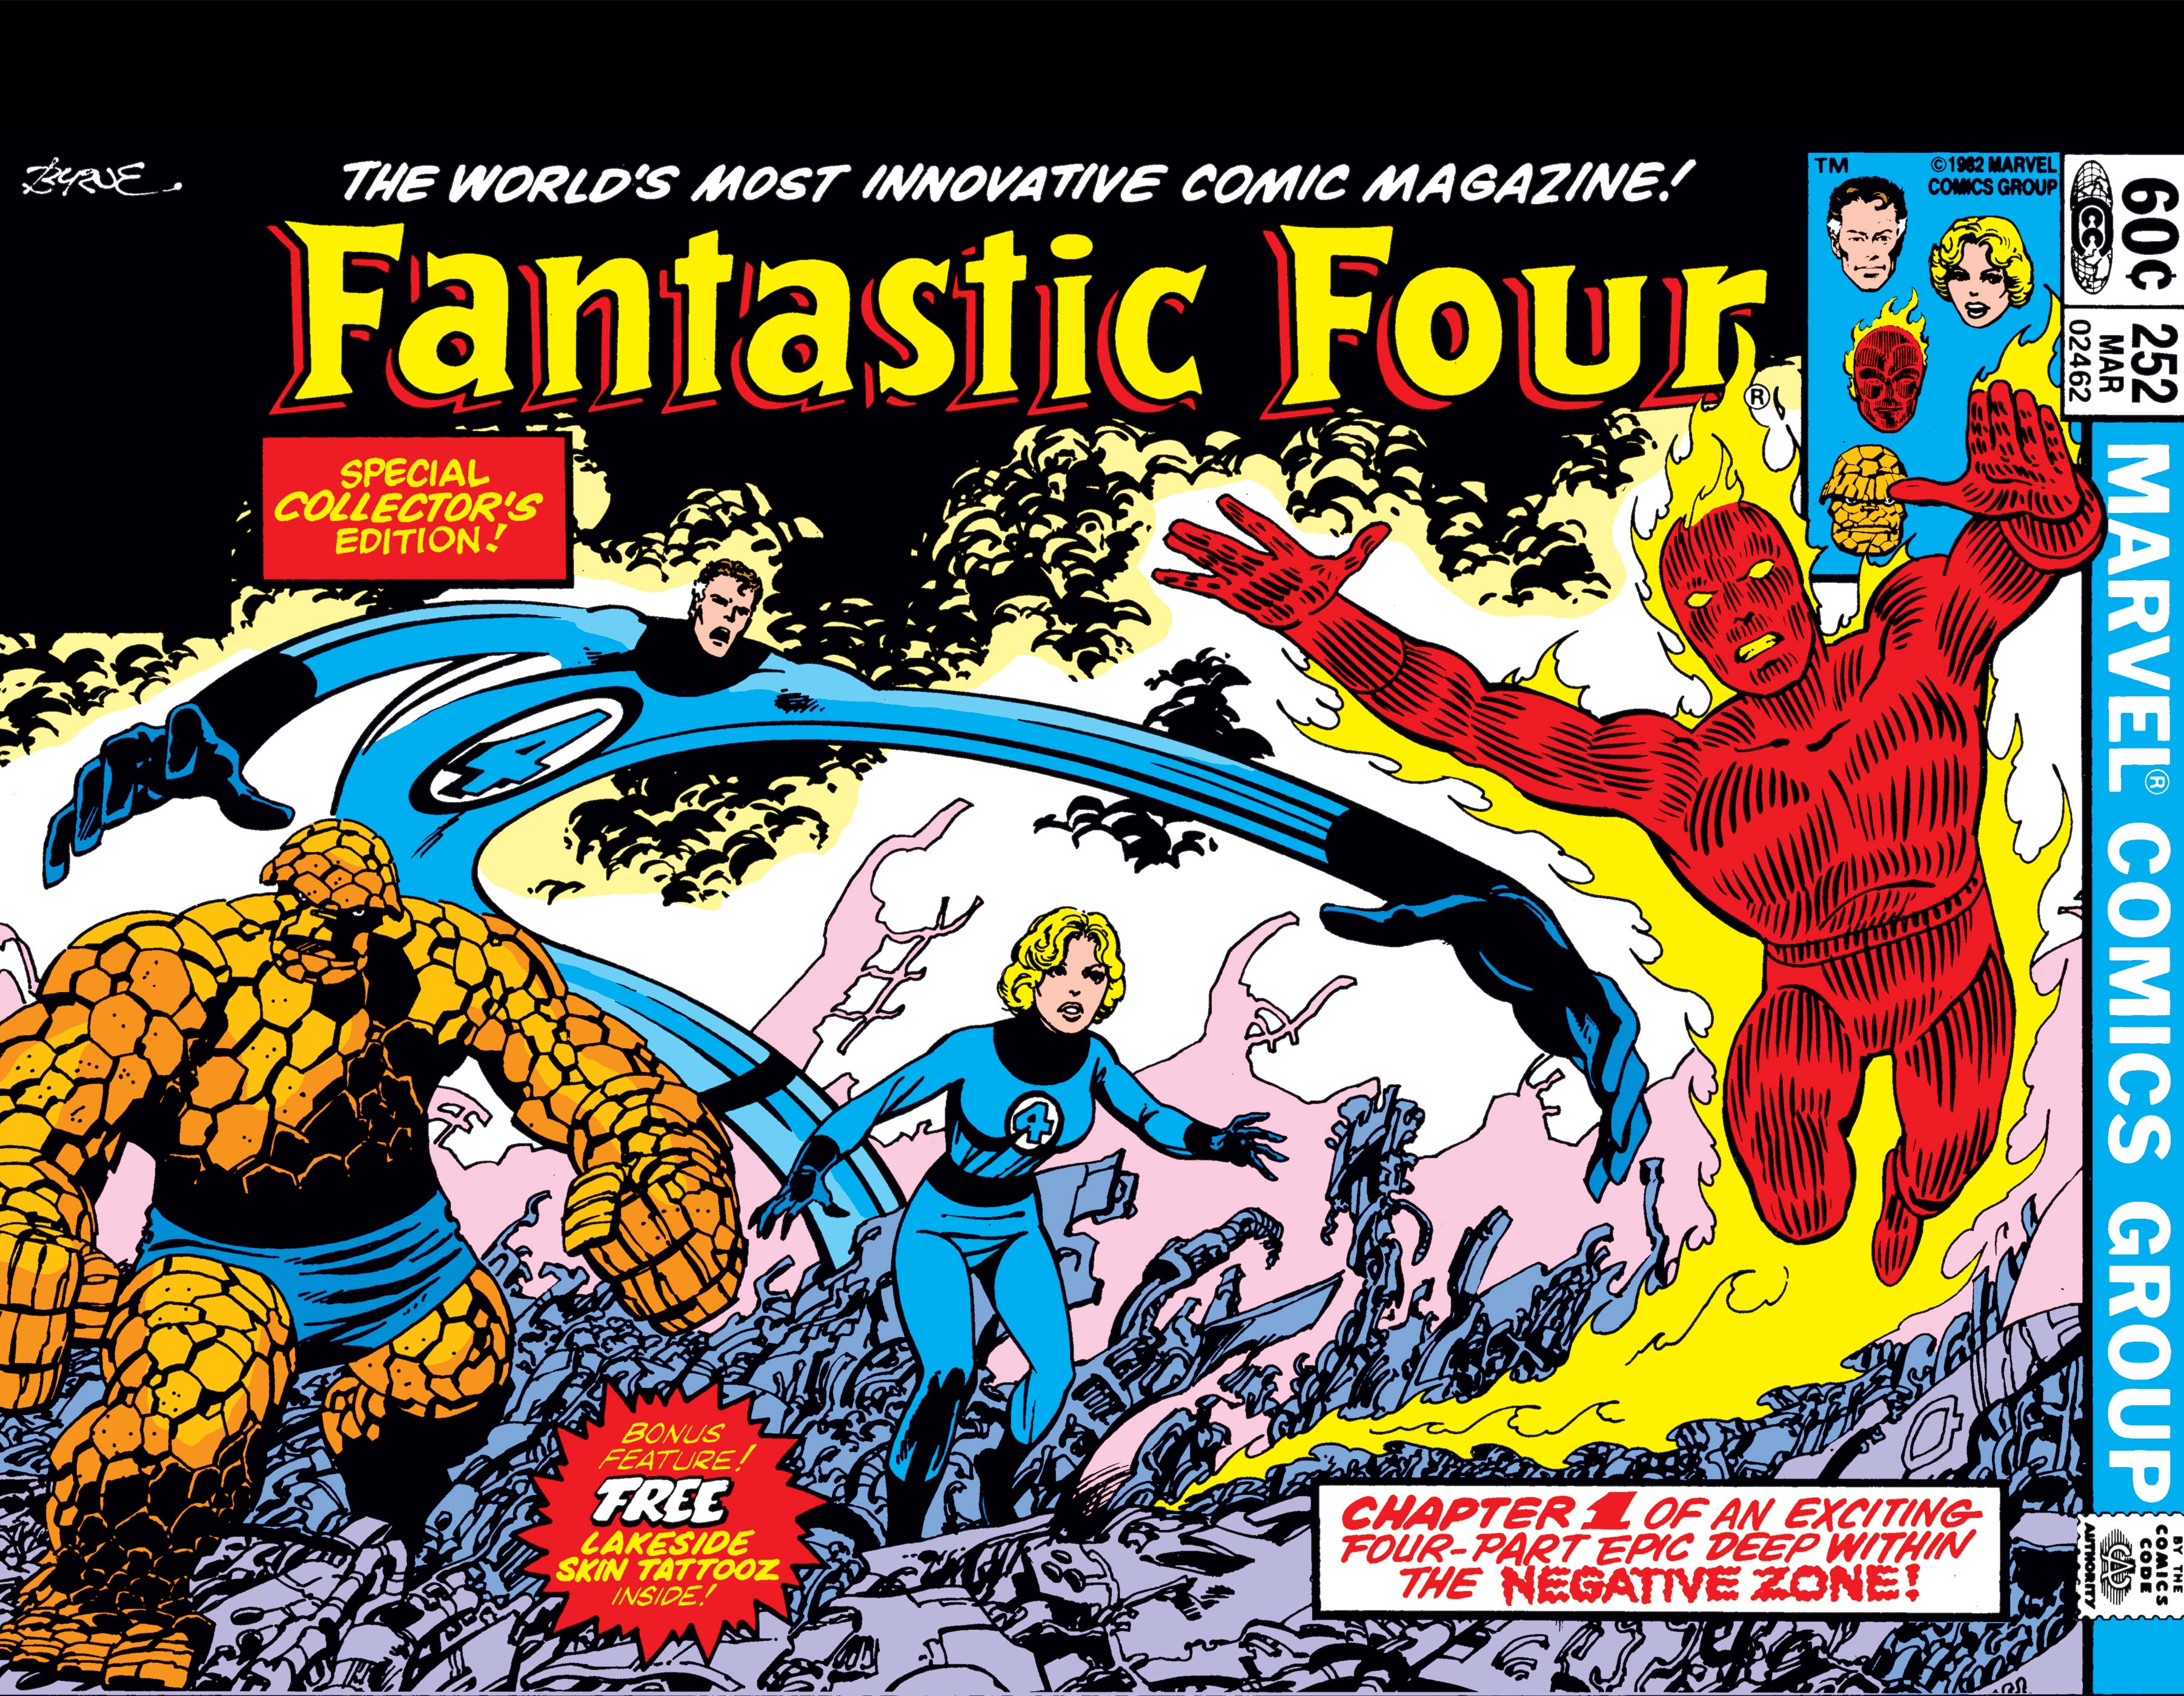 Marvel Digital Comics — Fantastic Four (1961) #66 - VeVe Digital  Collectibles